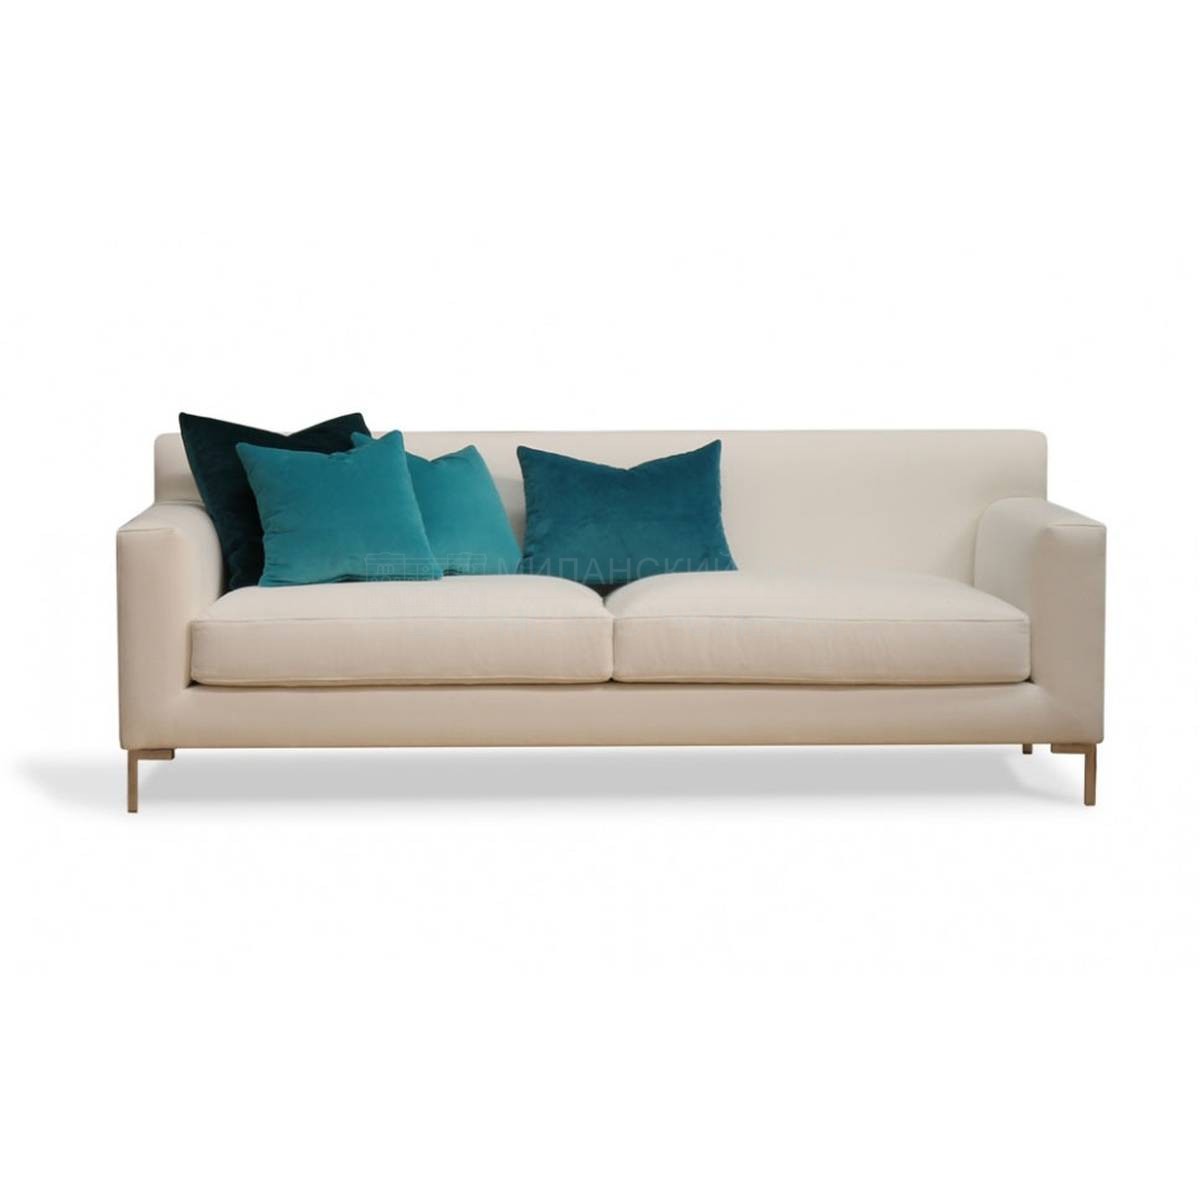 Прямой диван Joe/sofa из Испании фабрики MANUEL LARRAGA